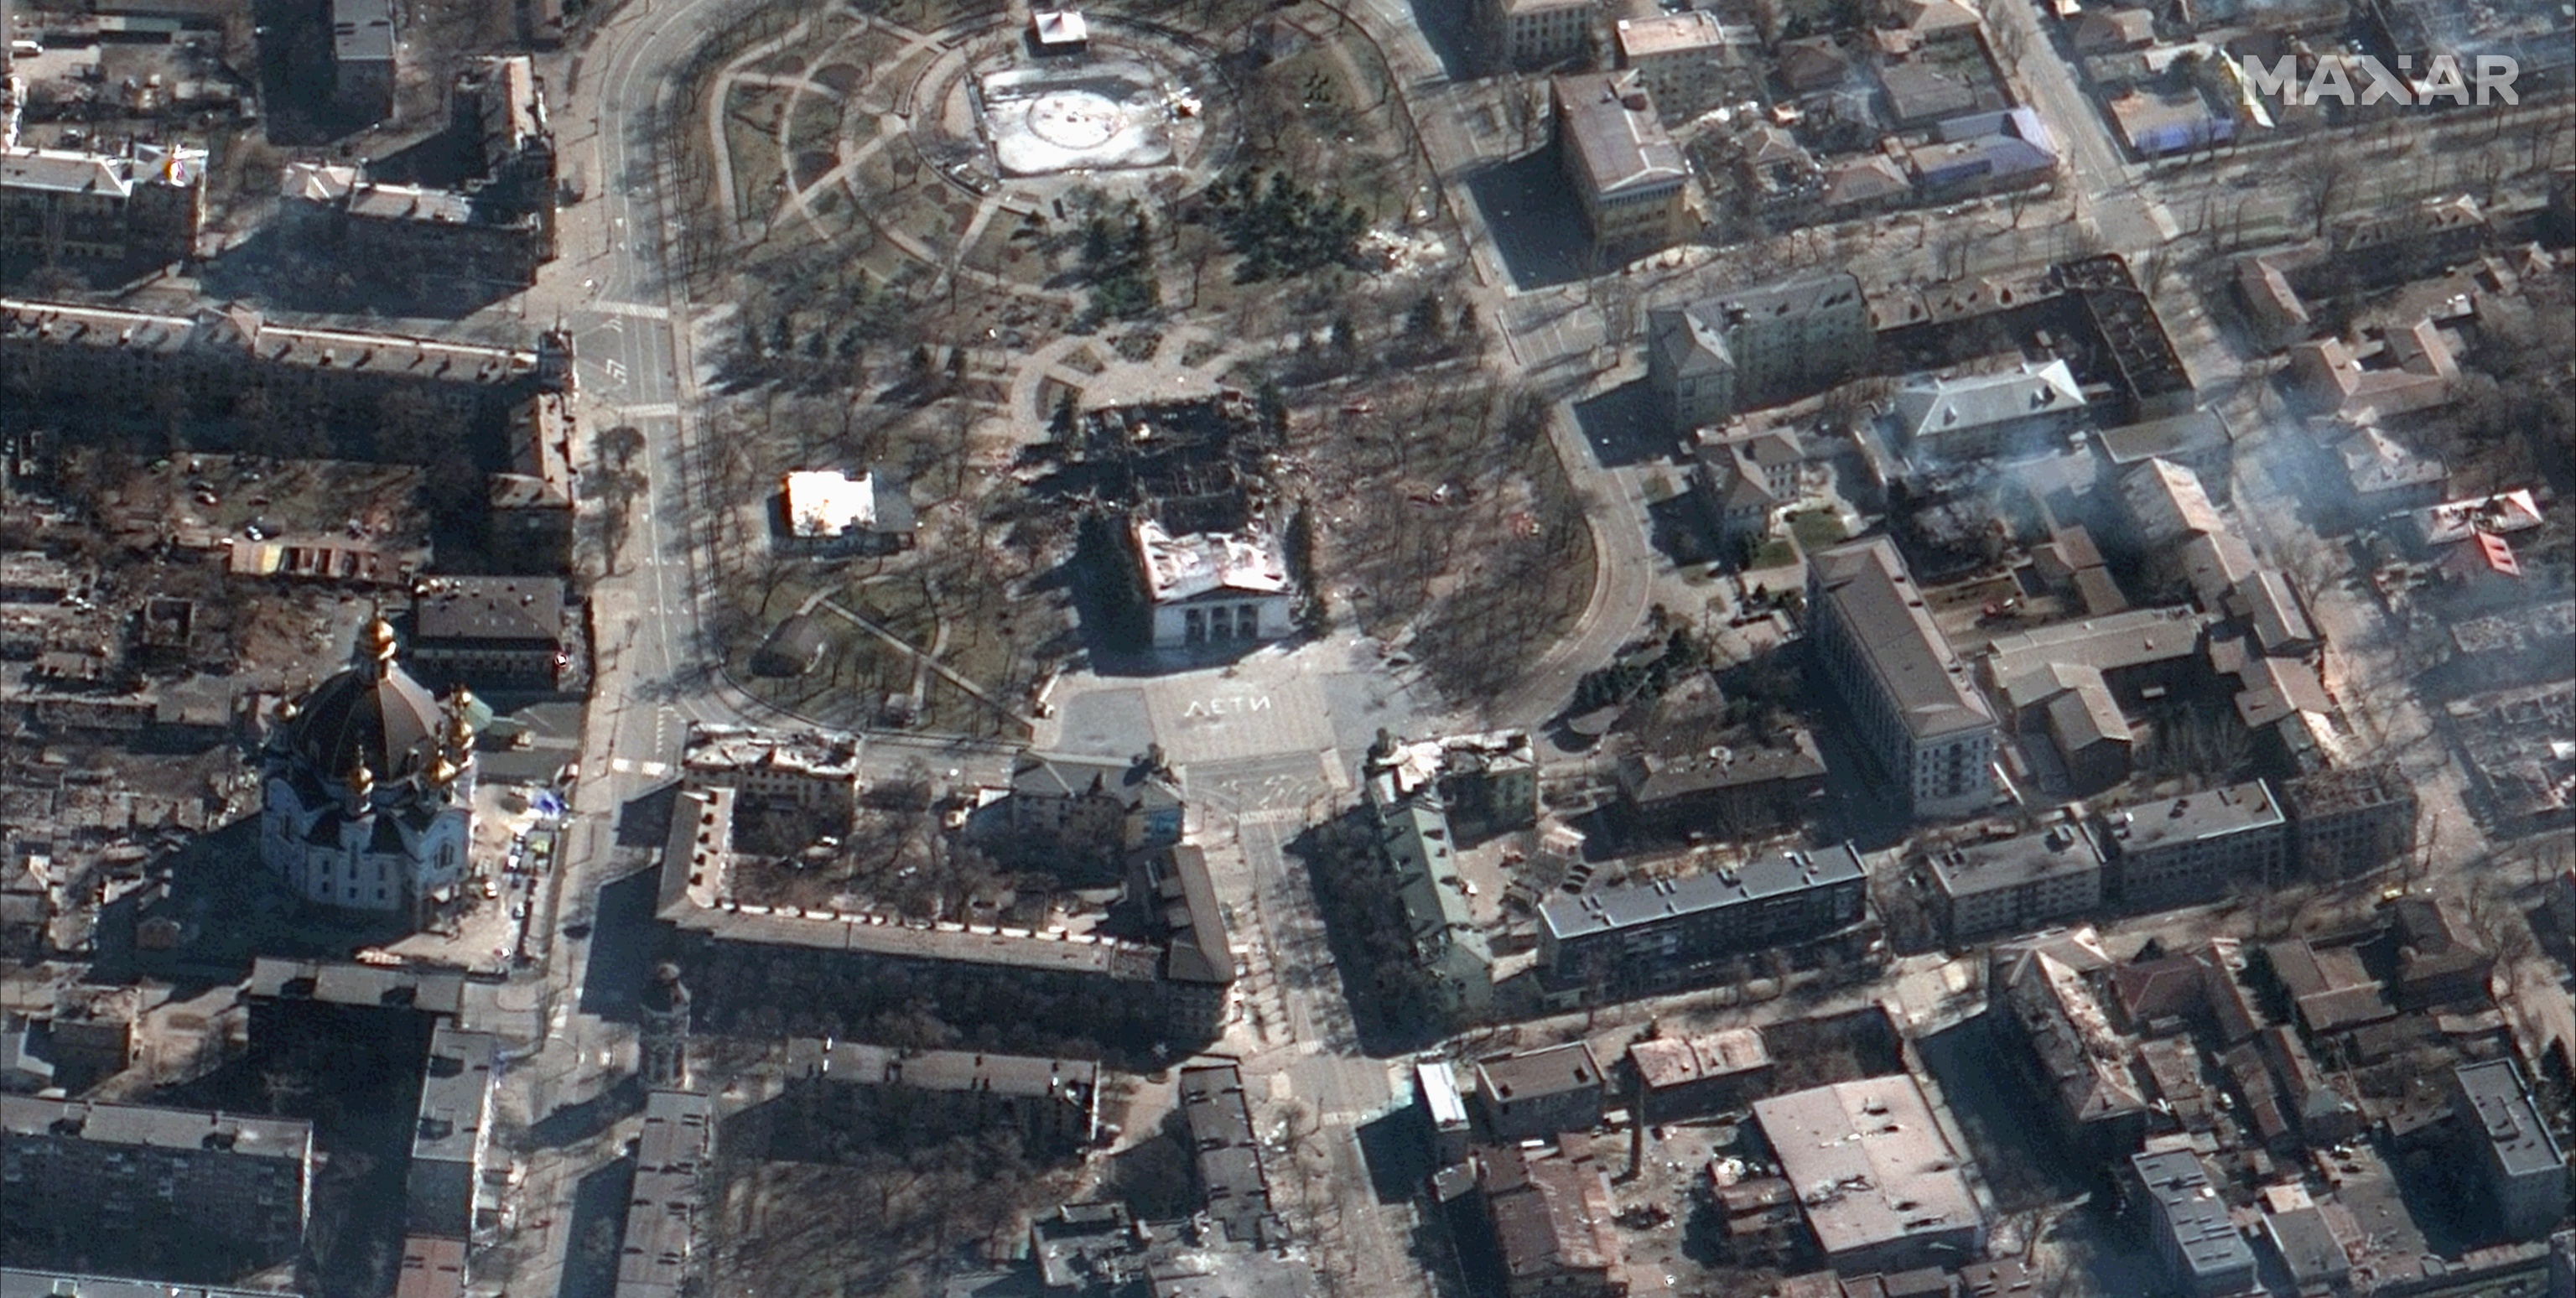 Mariupol confirma que 300 personas murieron en el bombardeo del teatro que servía de refugio